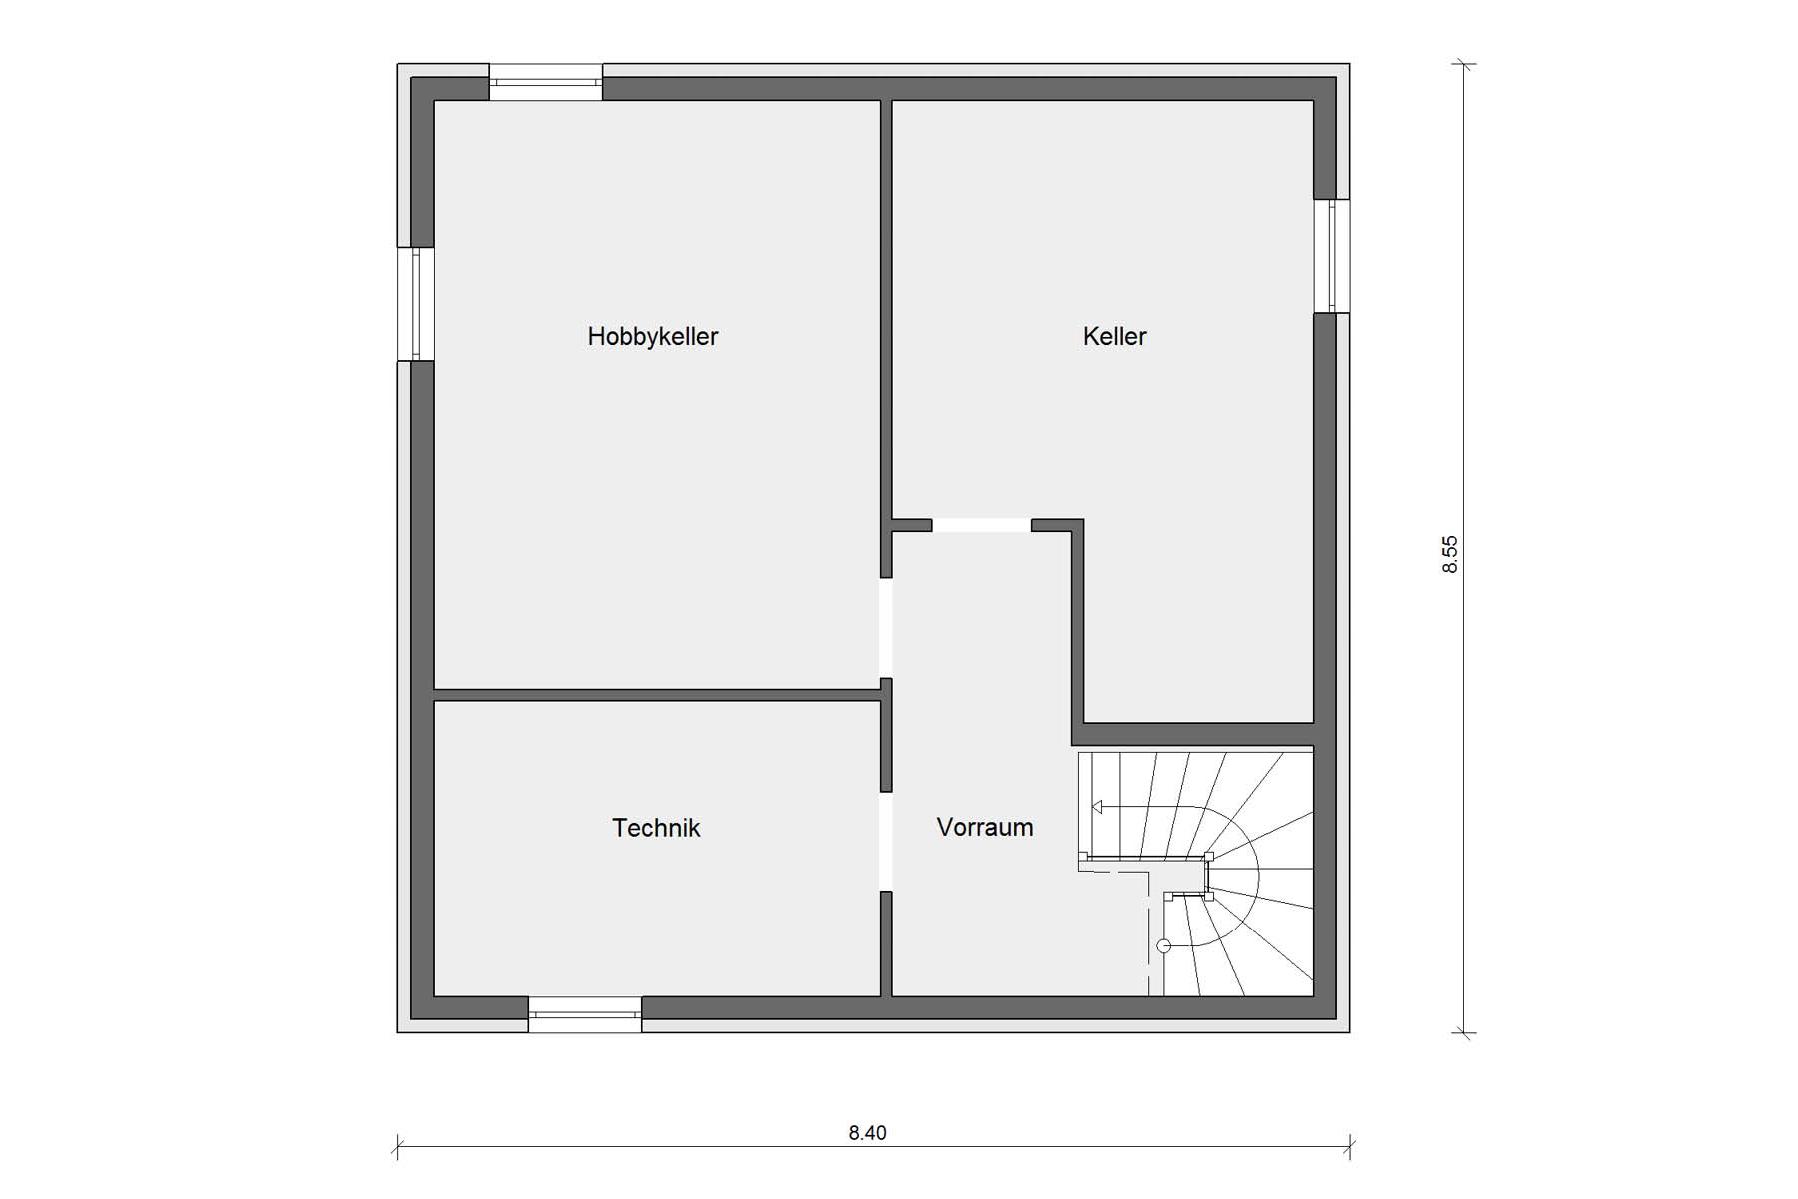 Plano del sótano casa con arquitectura de estilo Bauhaus E 20-119.1